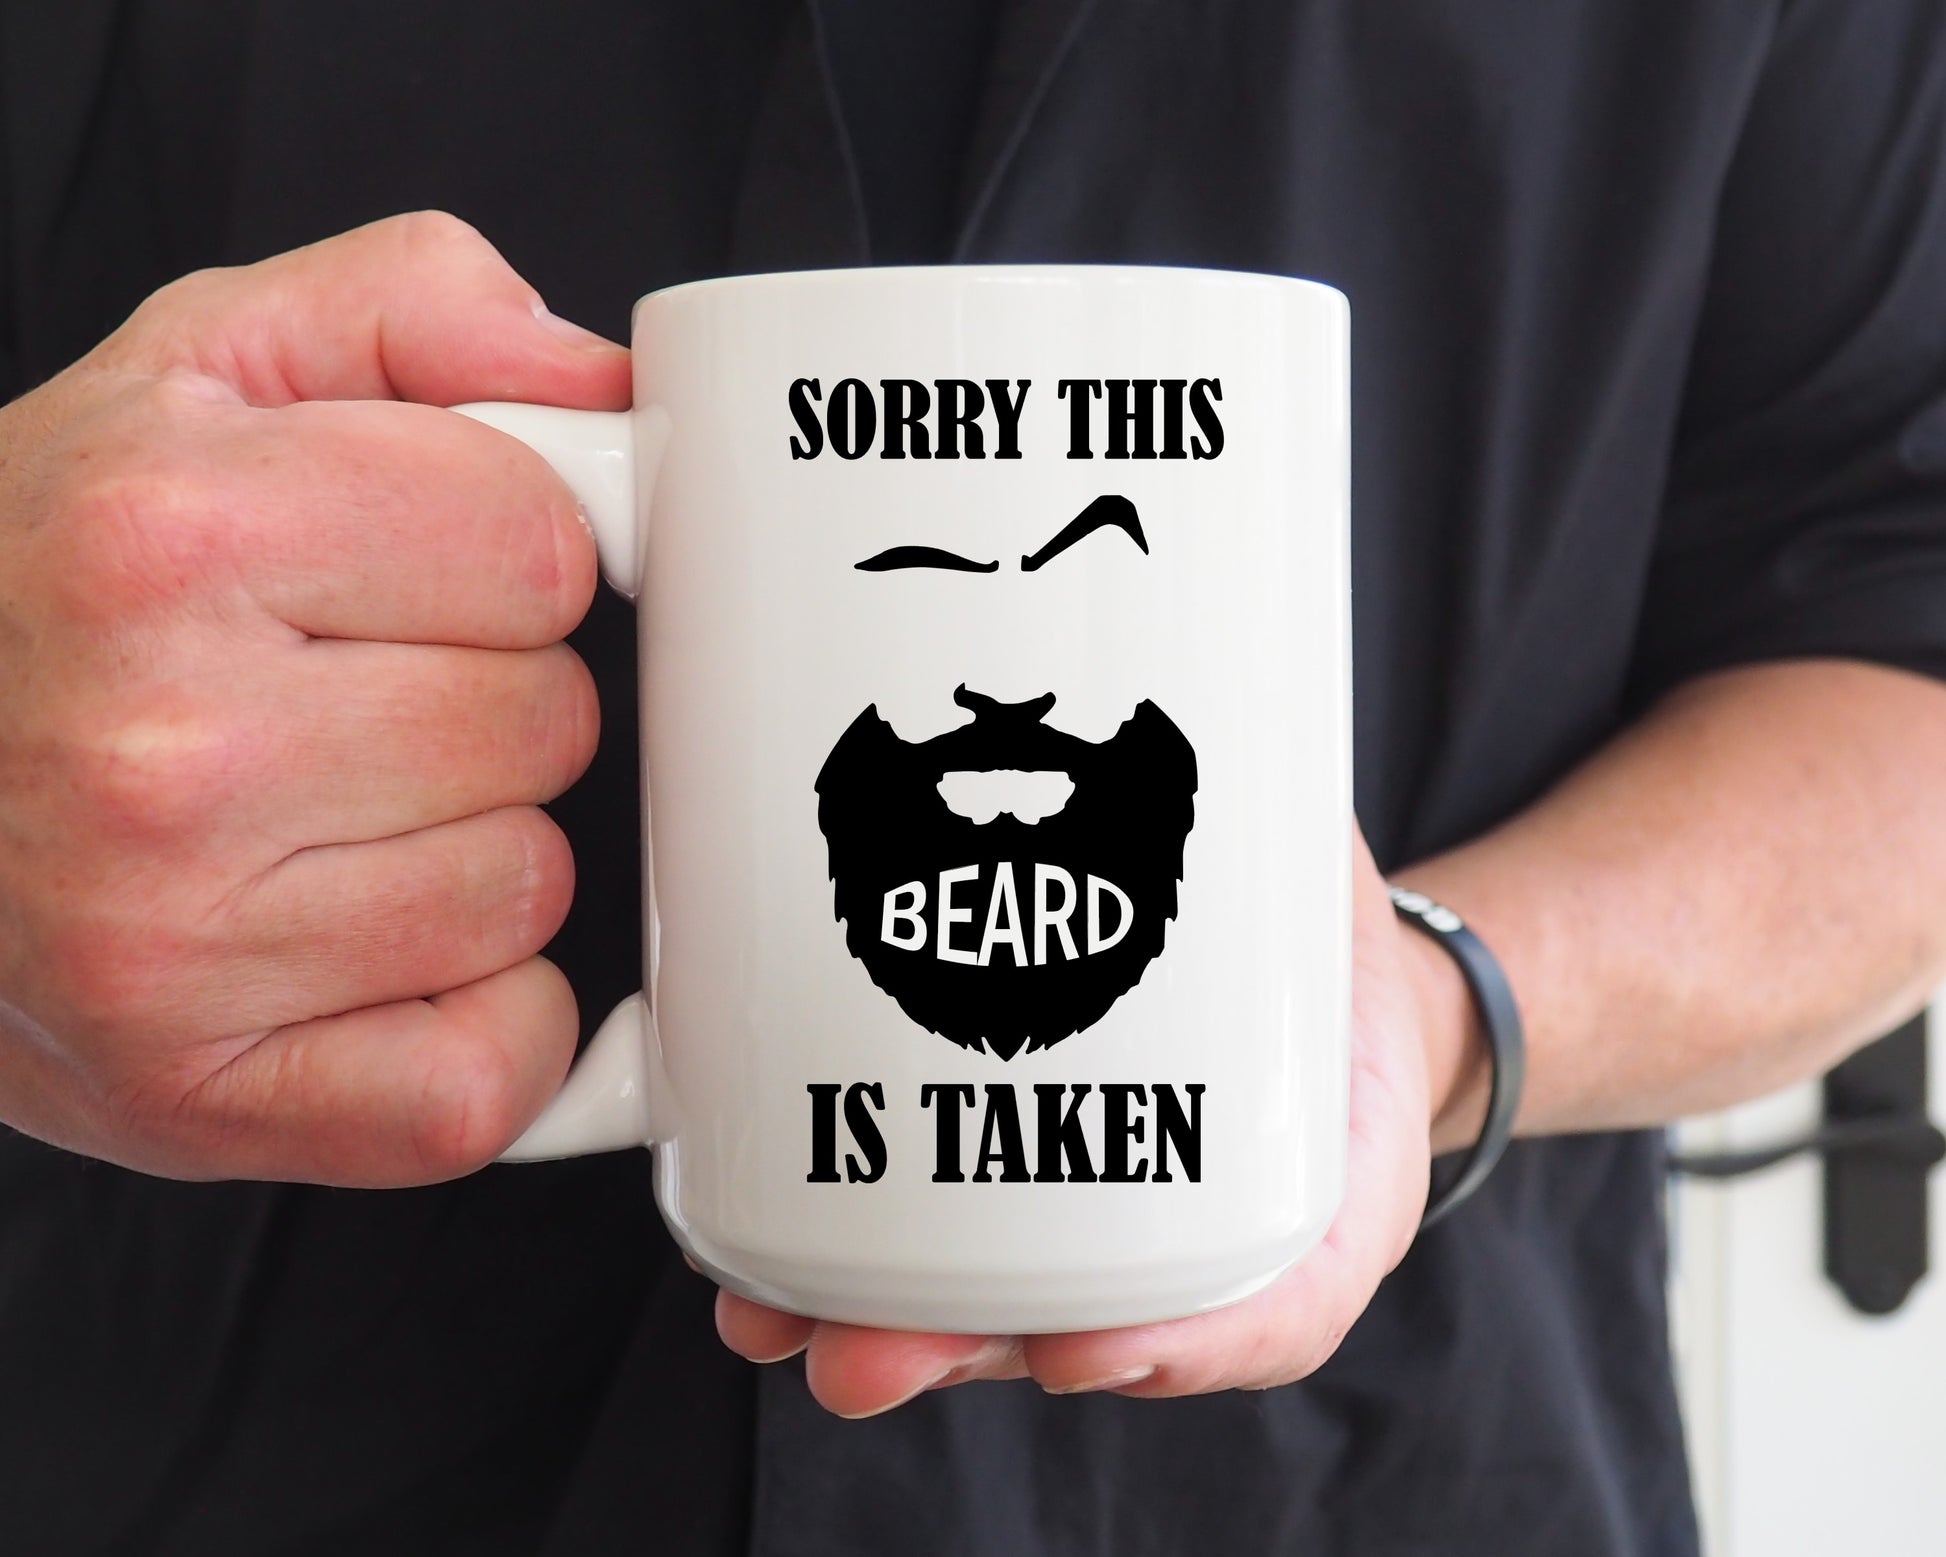 This beard is taken ceramic coffee mug